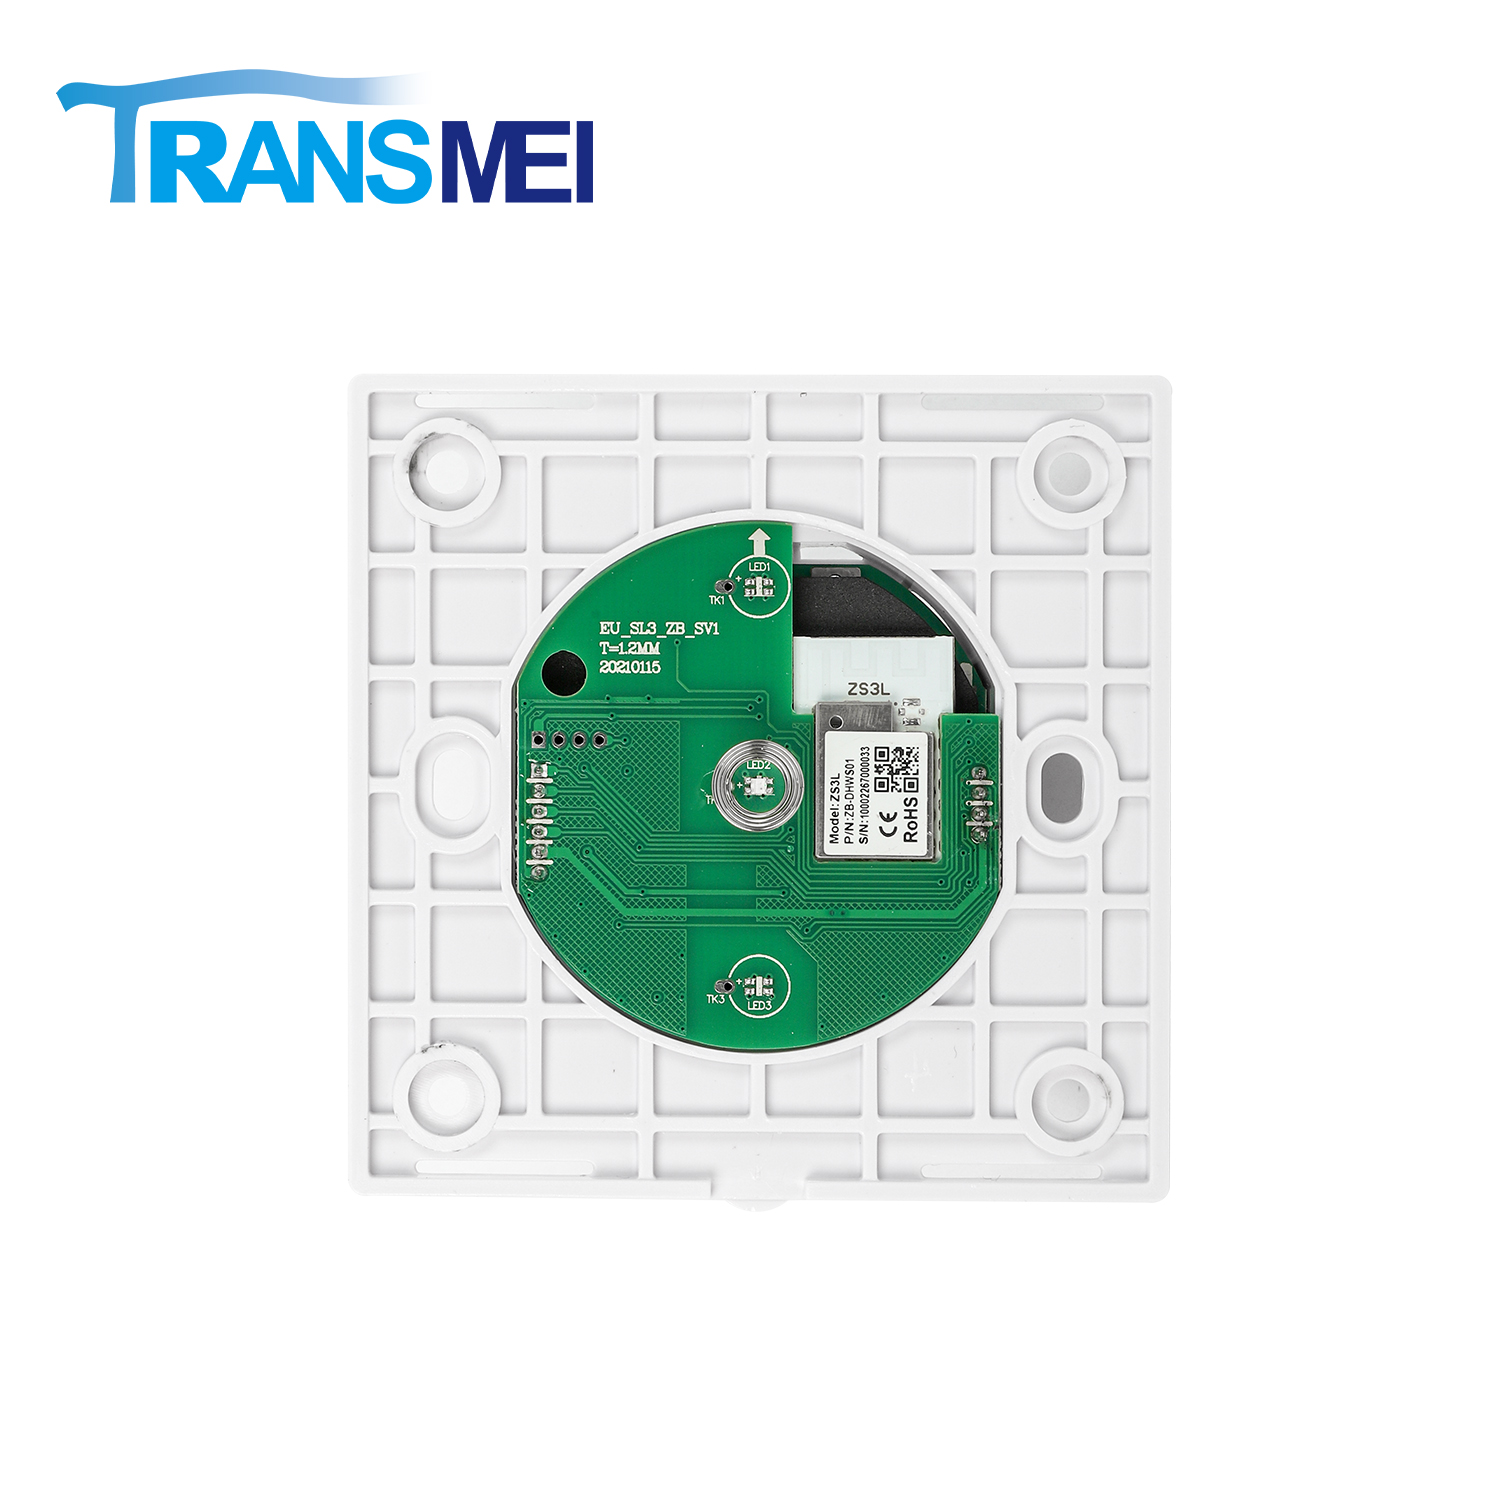 Smart Switch TM-WF-EU01S